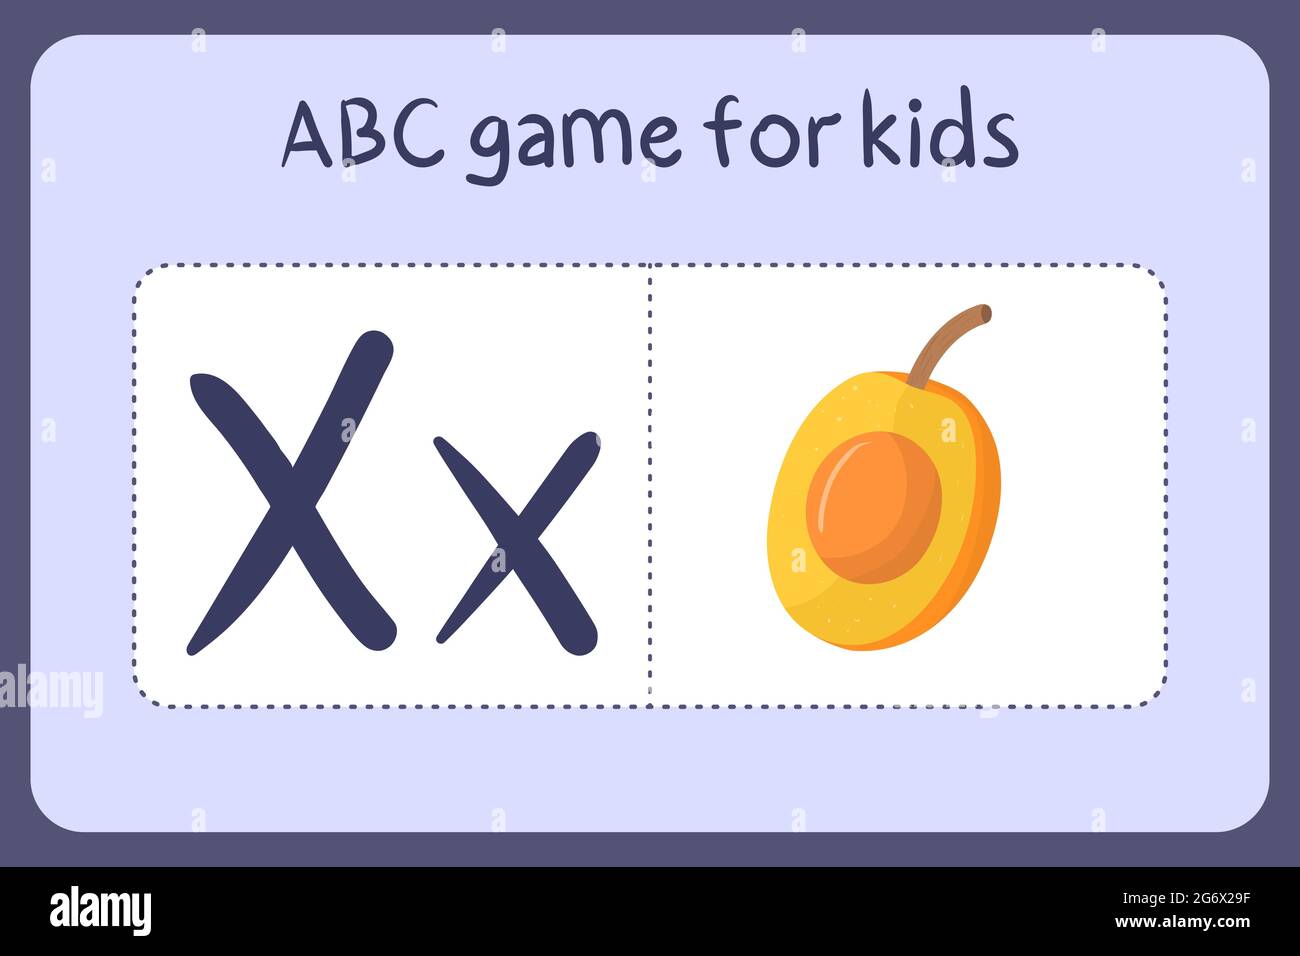 Kind Alphabet Mini-Spiele im Cartoon-Stil mit dem Buchstaben X - ximenia. Vektor-Illustration für Spiel-Design - Schneiden und spielen. Lerne abc mit Flash-Karten für Obst und Gemüse. Stock Vektor